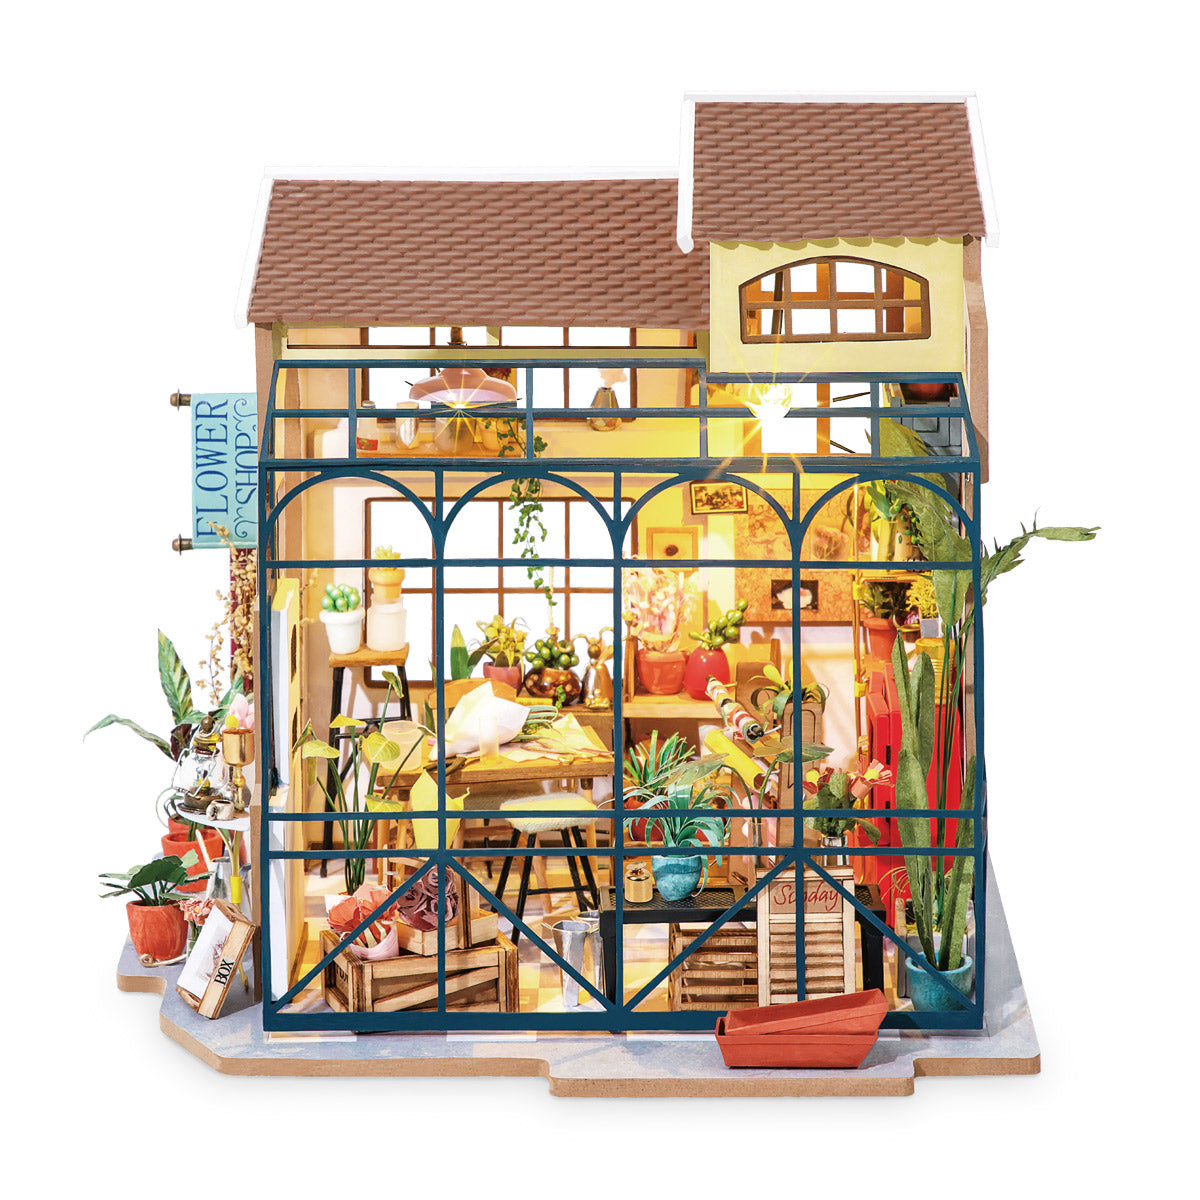 Miniature House - Emily's Flower Shop